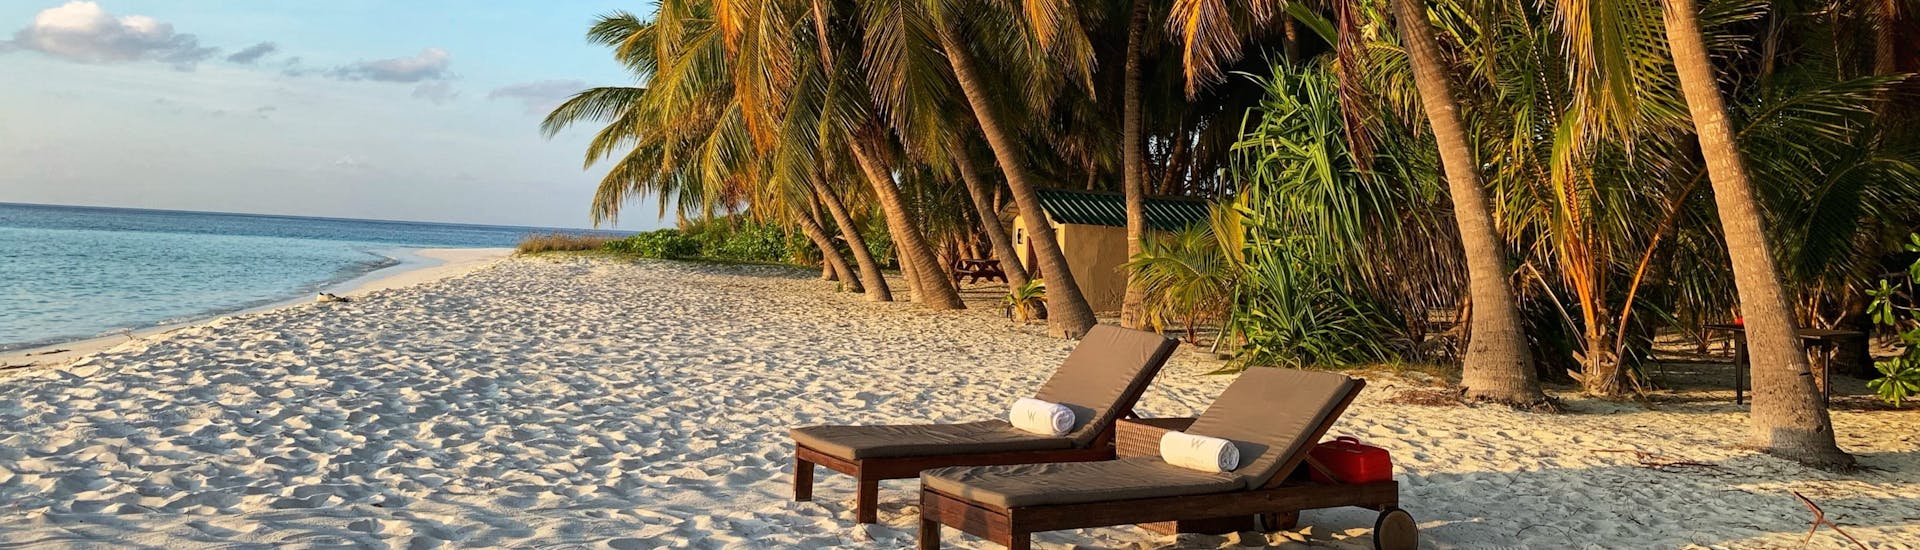 Cât costă o vacanță în Maldive